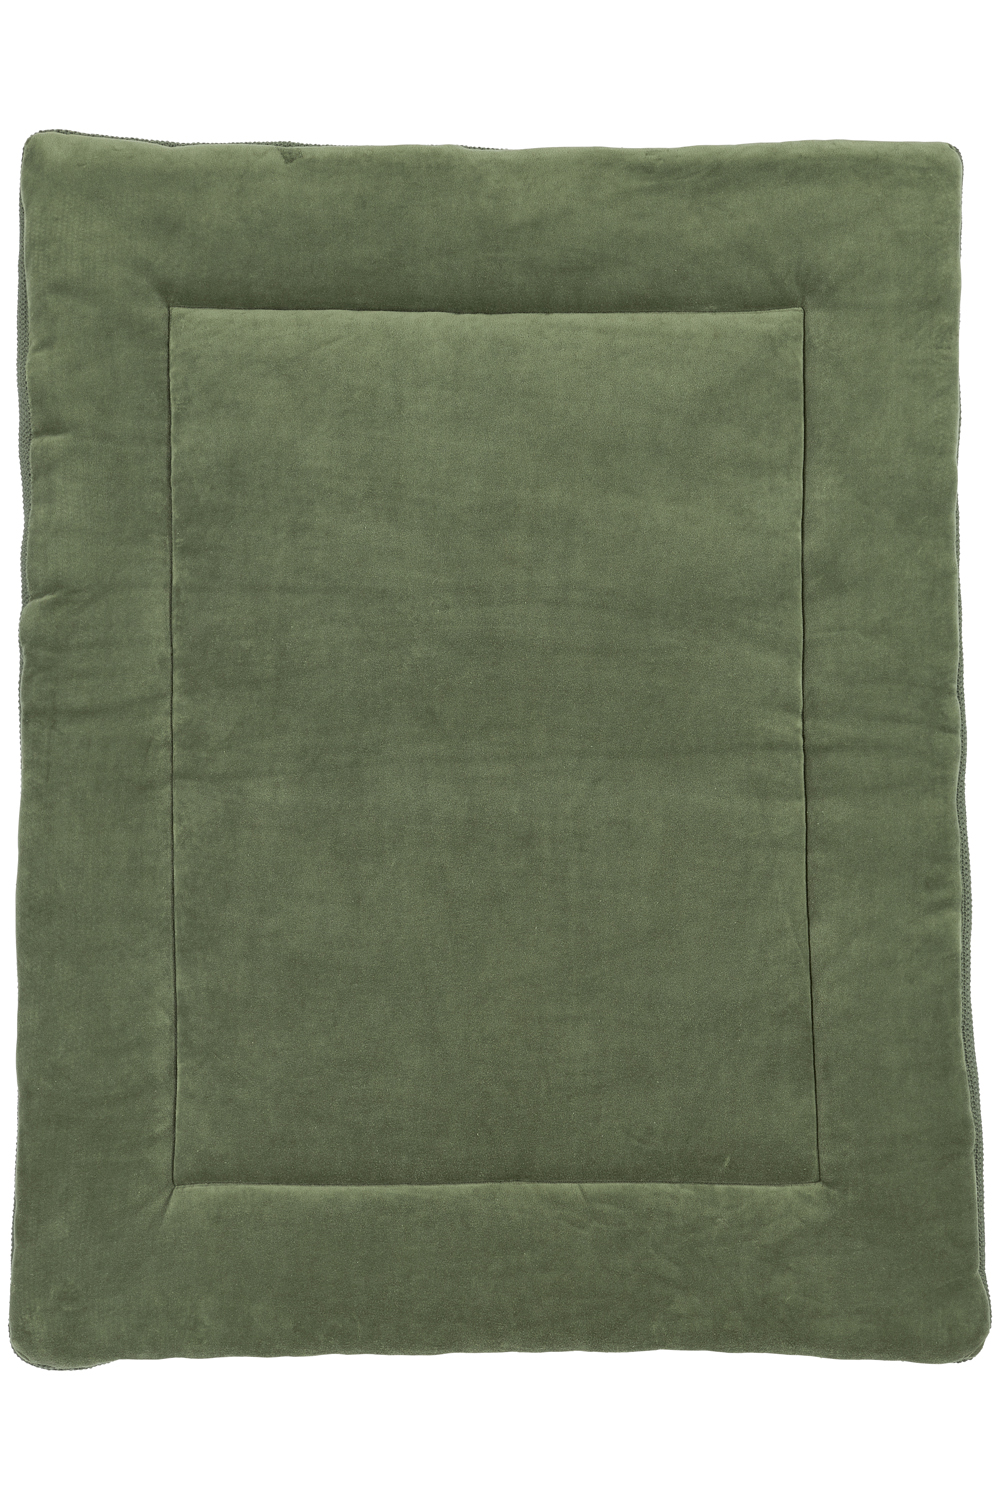 Playpen mattress biological Mini Relief - forest green - 77x97cm